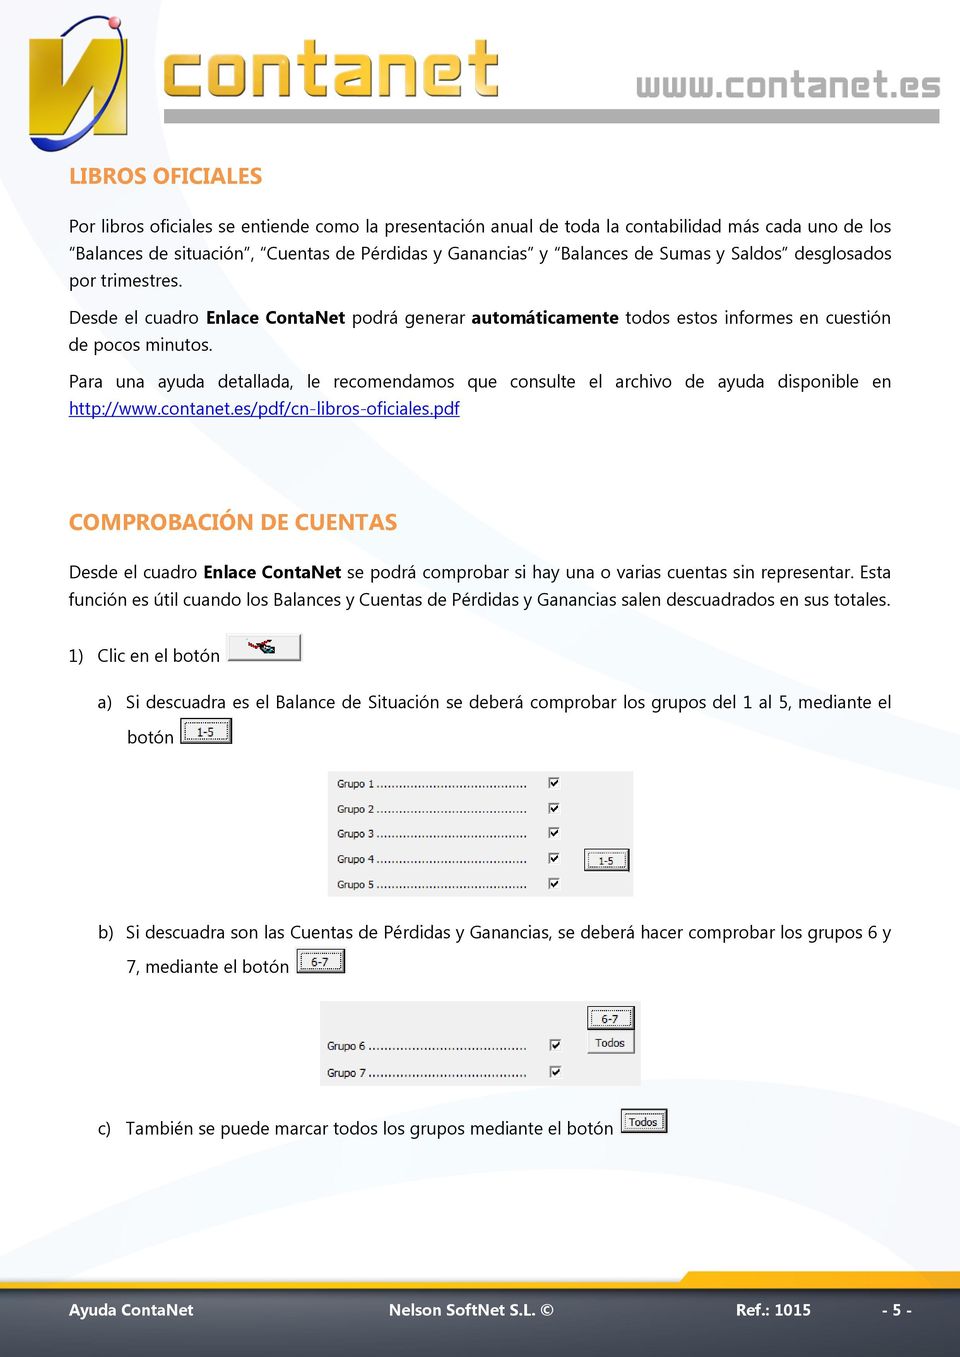 Para una ayuda detallada, le recomendamos que consulte el archivo de ayuda disponible en http://www.contanet.es/pdf/cn-libros-oficiales.